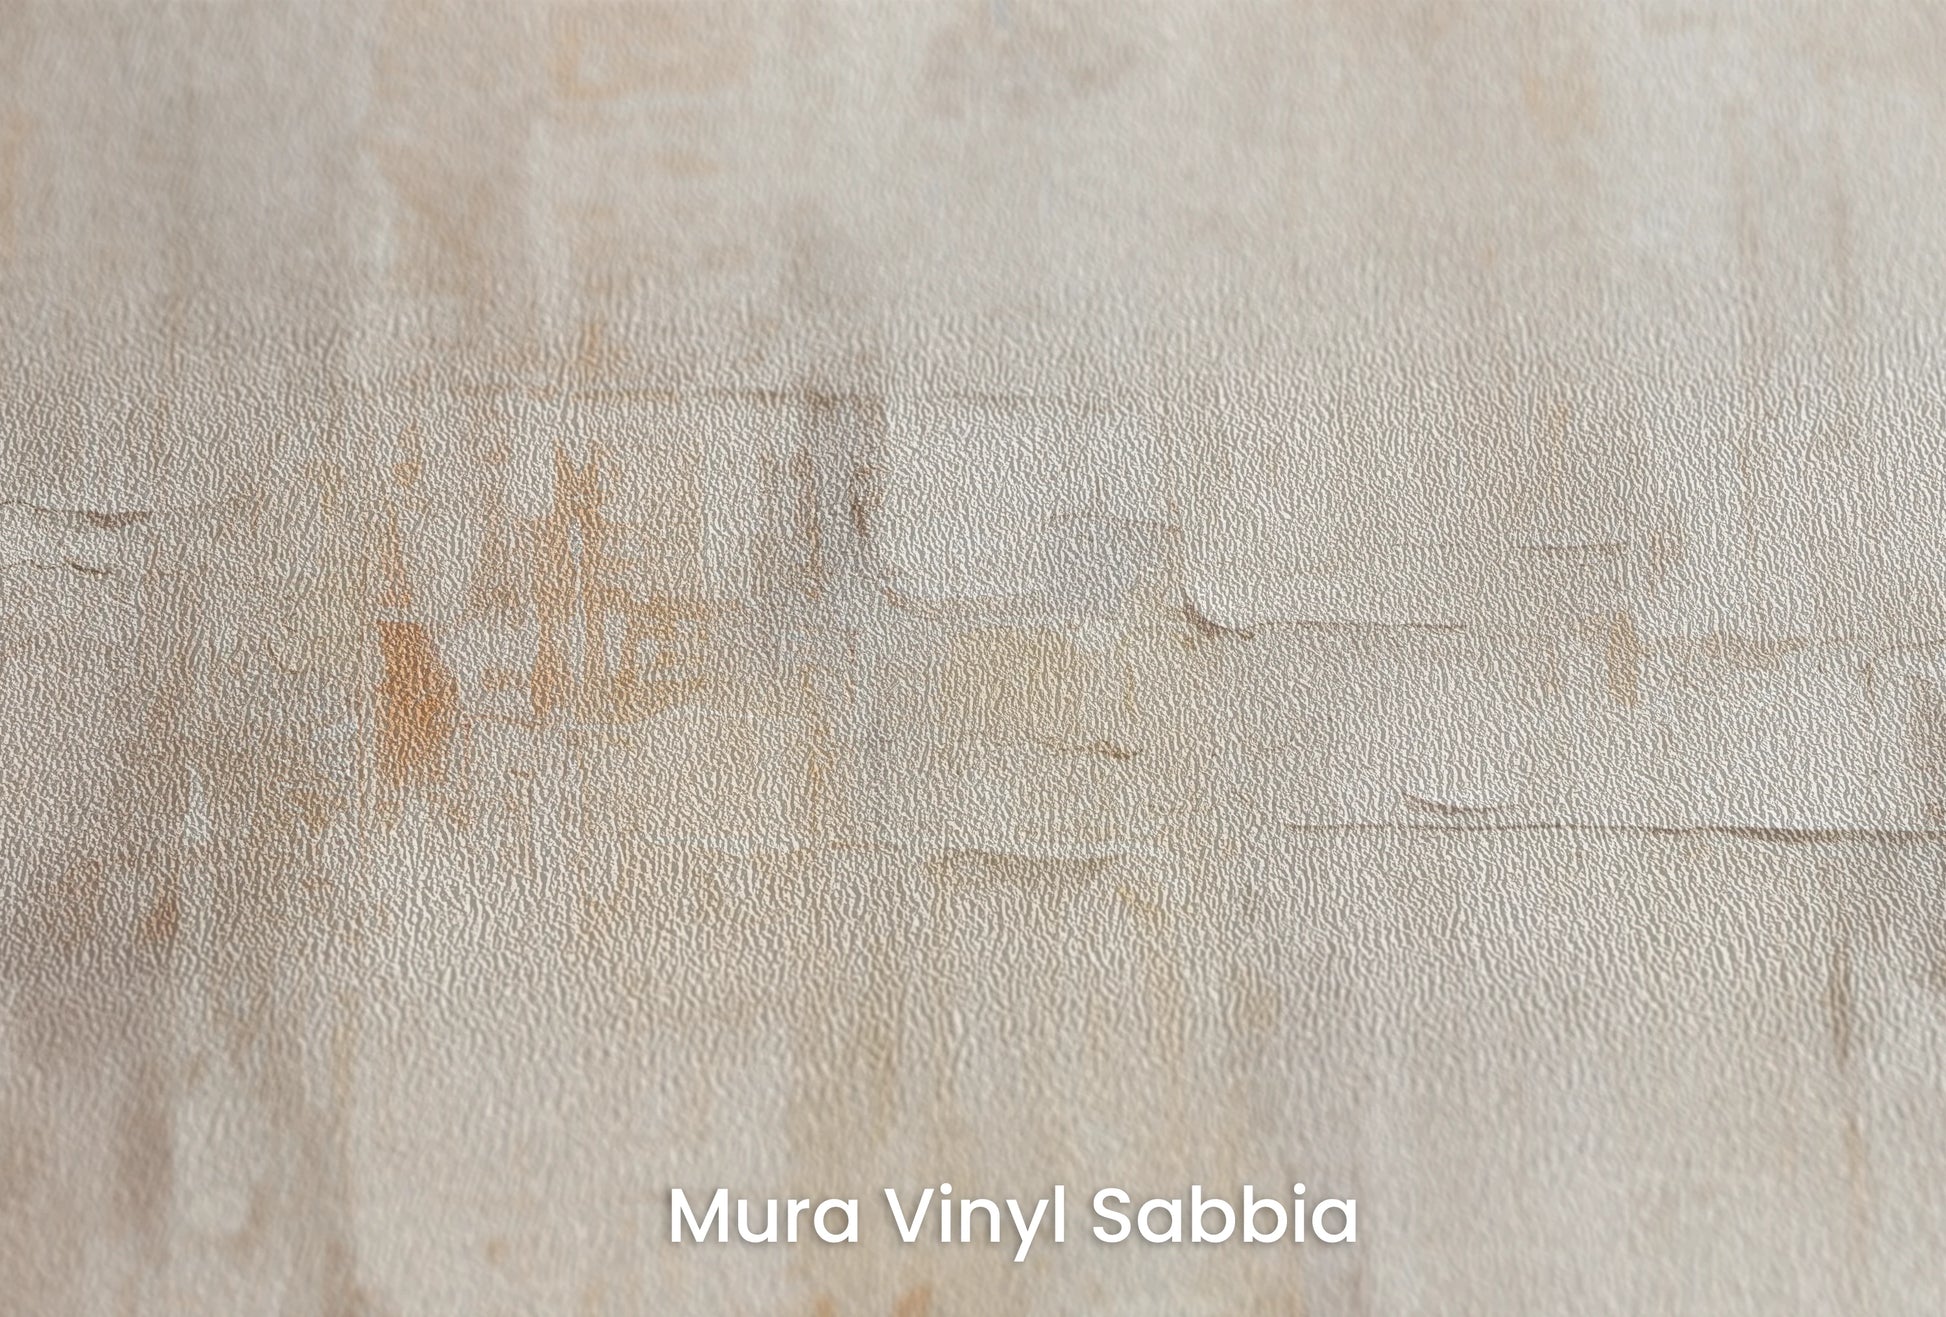 Zbliżenie na artystyczną fototapetę o nazwie Mosaic of Serenity na podłożu Mura Vinyl Sabbia struktura grubego ziarna piasku.